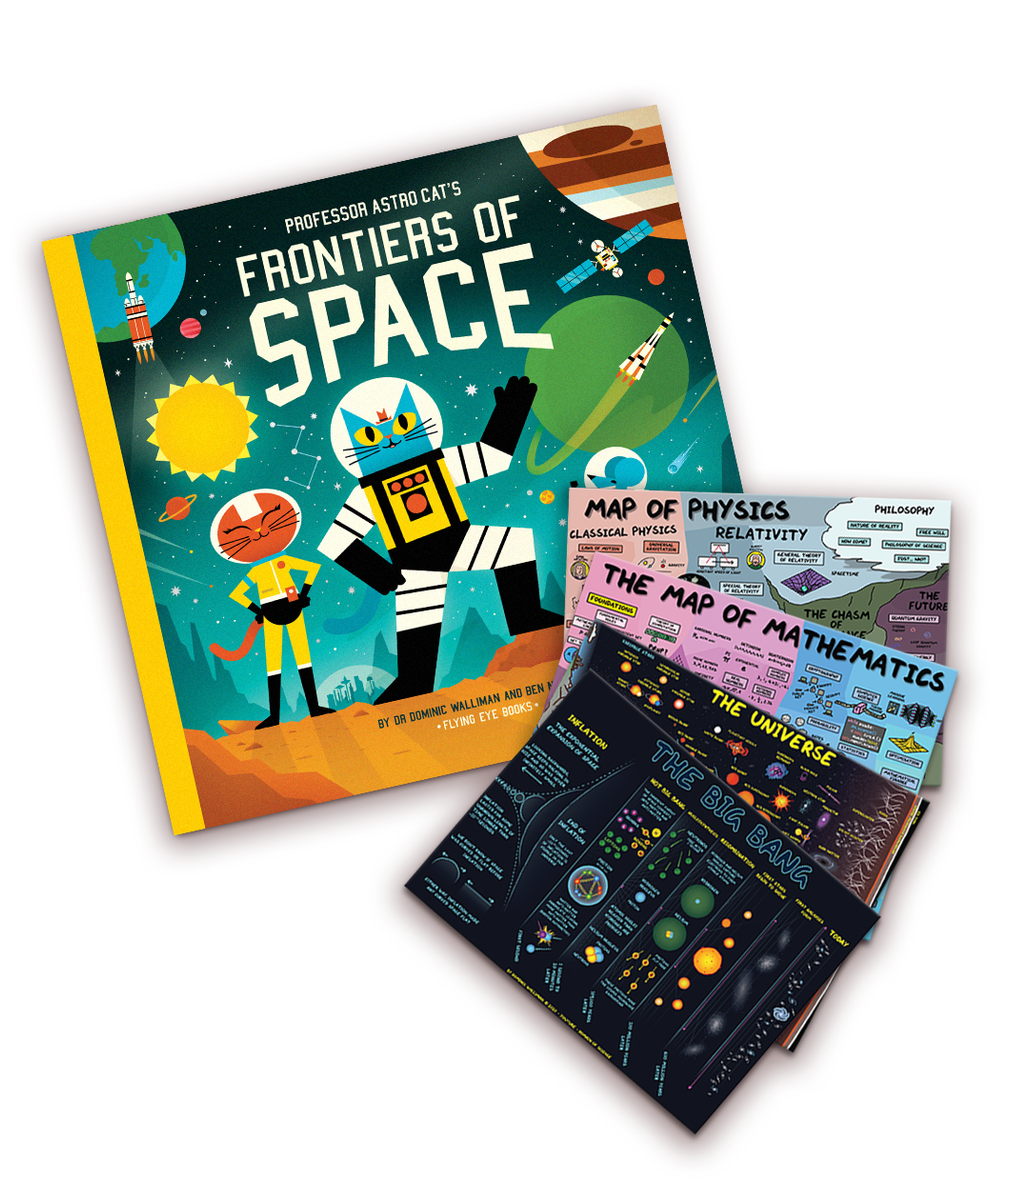 Domain of Science  Professor Astro Cat's Frontiers of Space - Book Bundle  – DFTBA